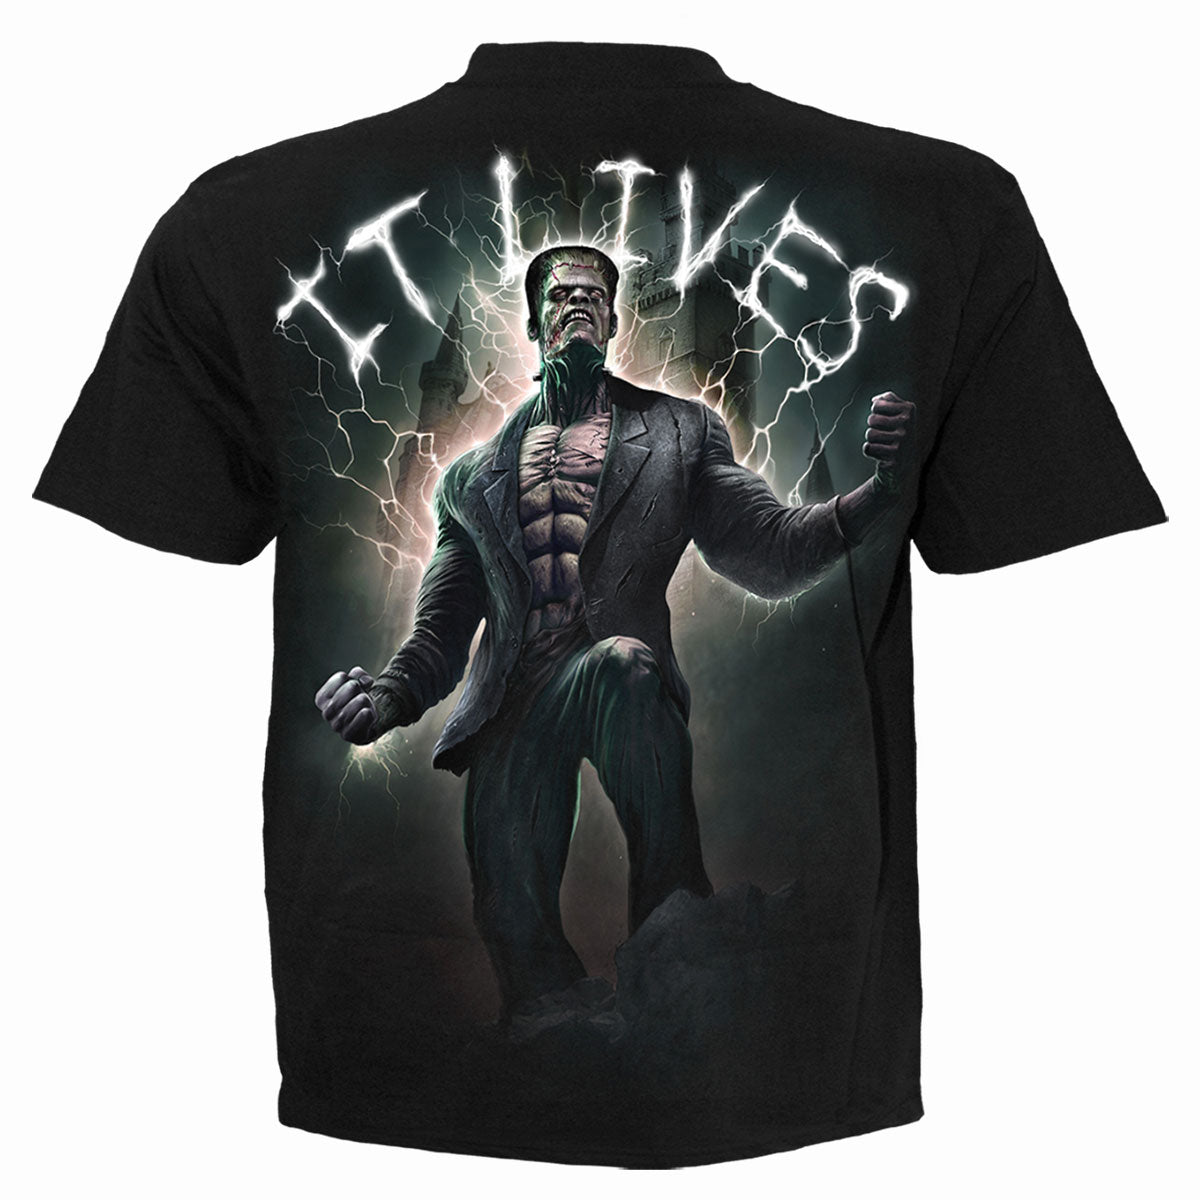 IT LIVES - Camiseta Negra